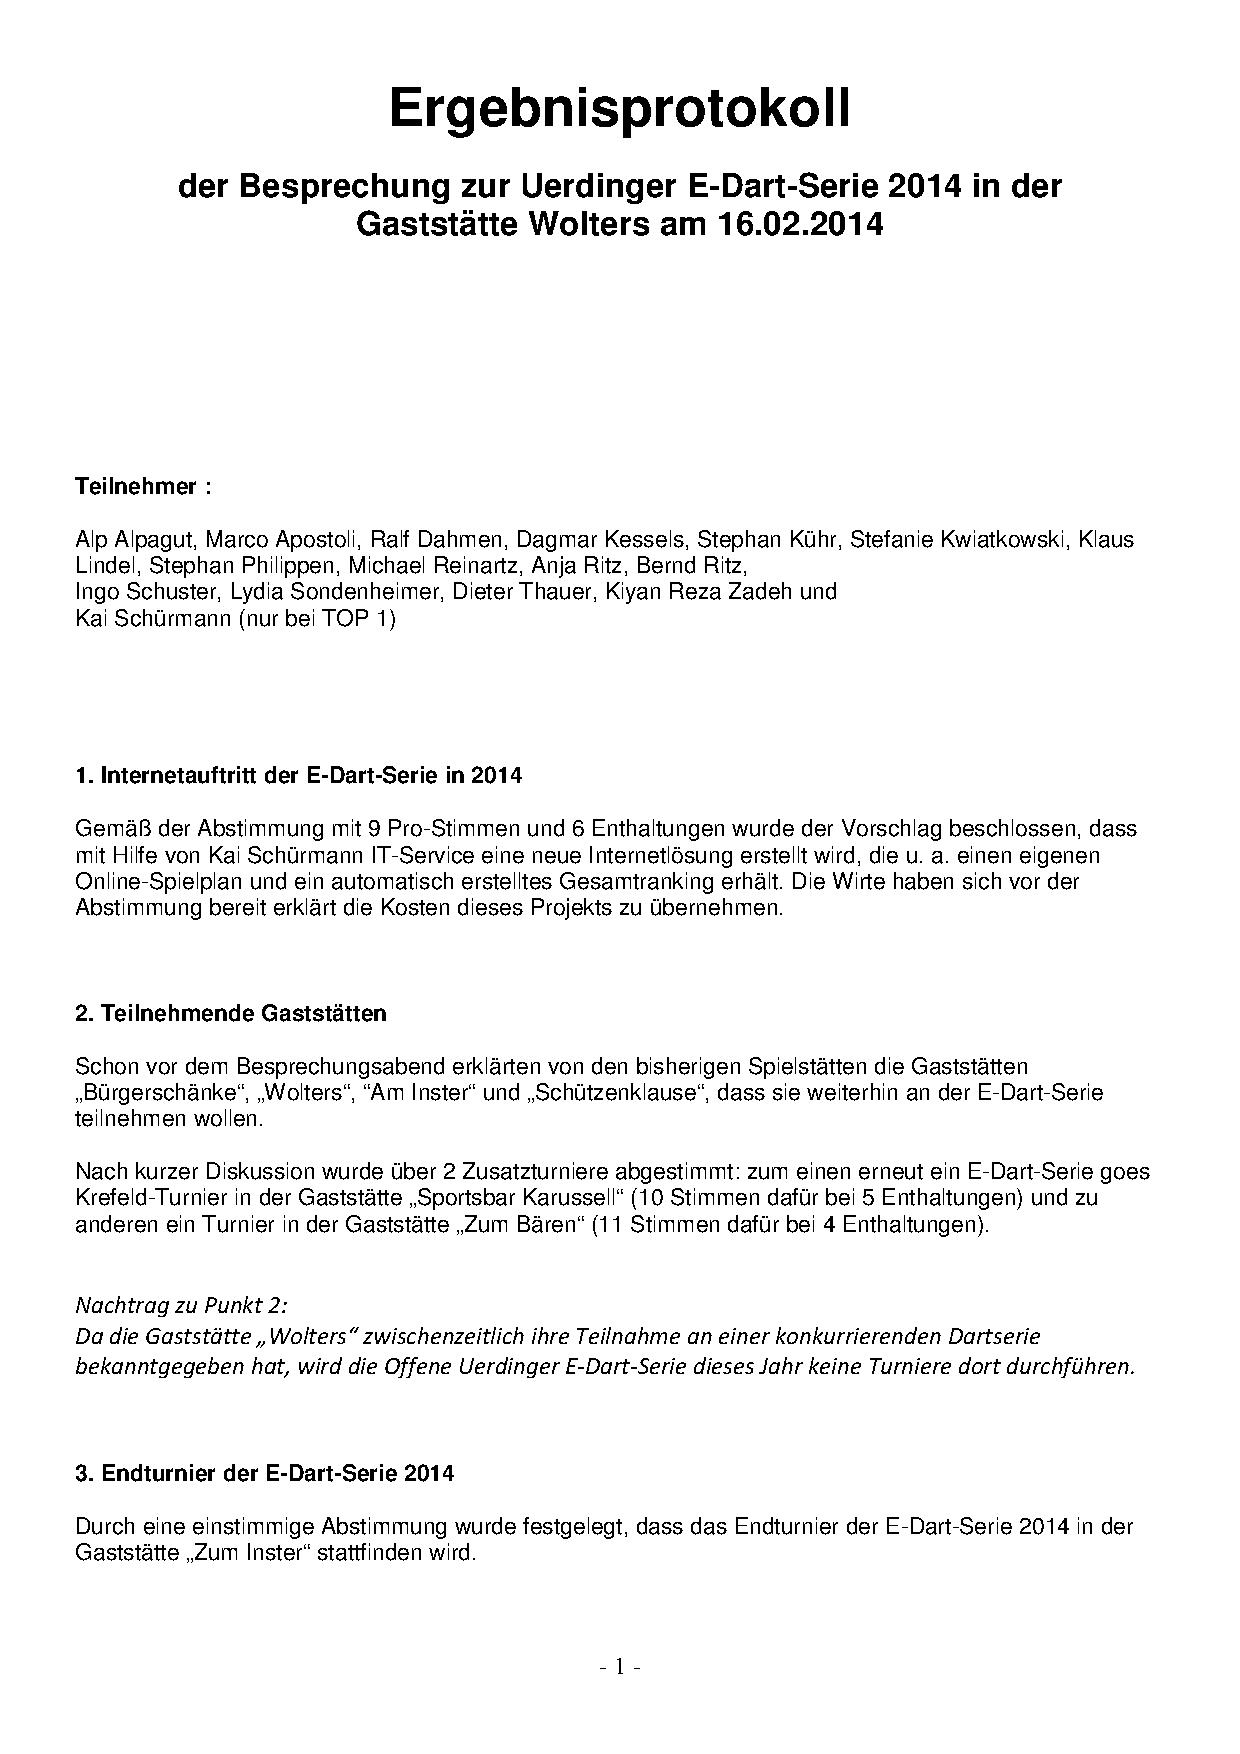 Protokoll Besprechungsabend E-Dart-Serie 2014 Offene Uerdinger E-Dart -Serie